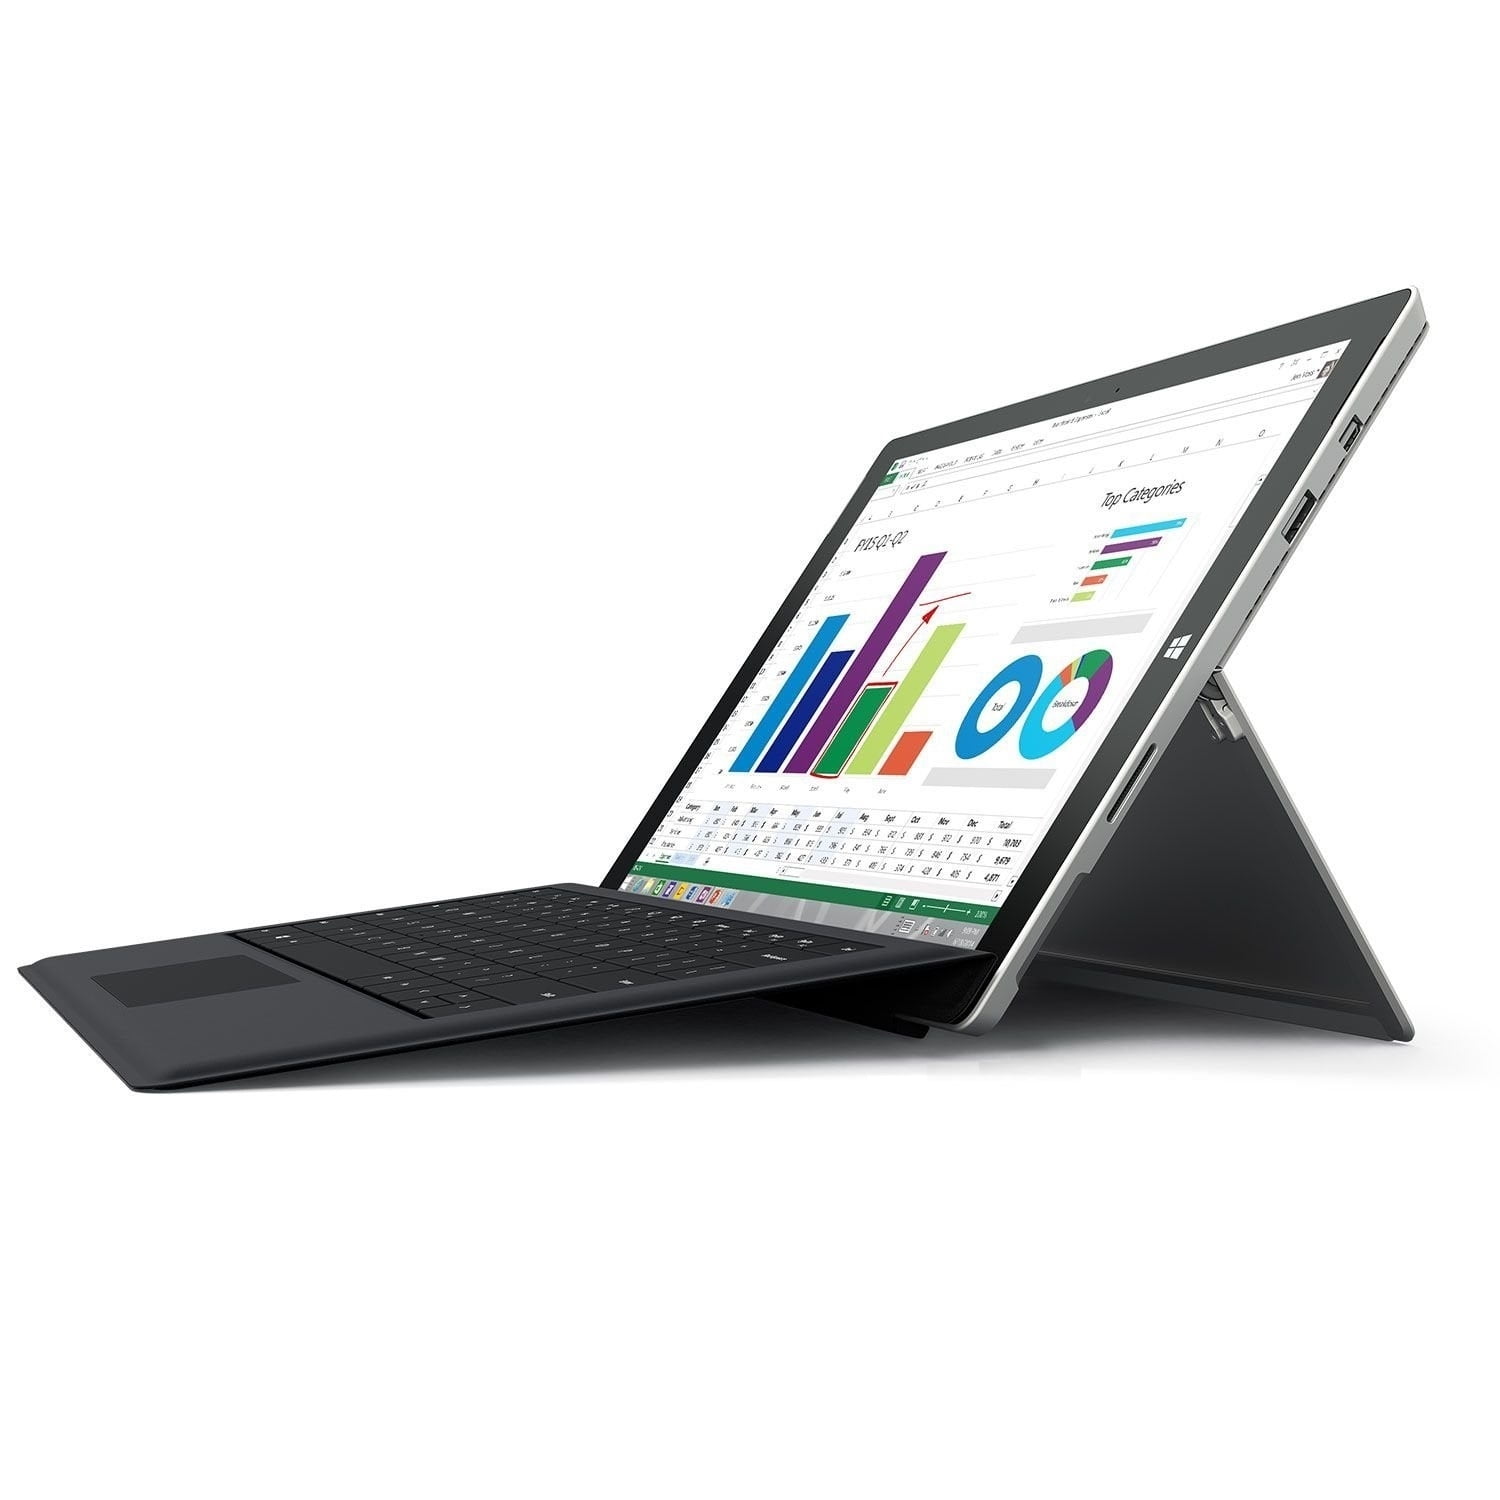 格安新品  Surface Pro 3 core i5/4GB/128GB office付き ノートPC